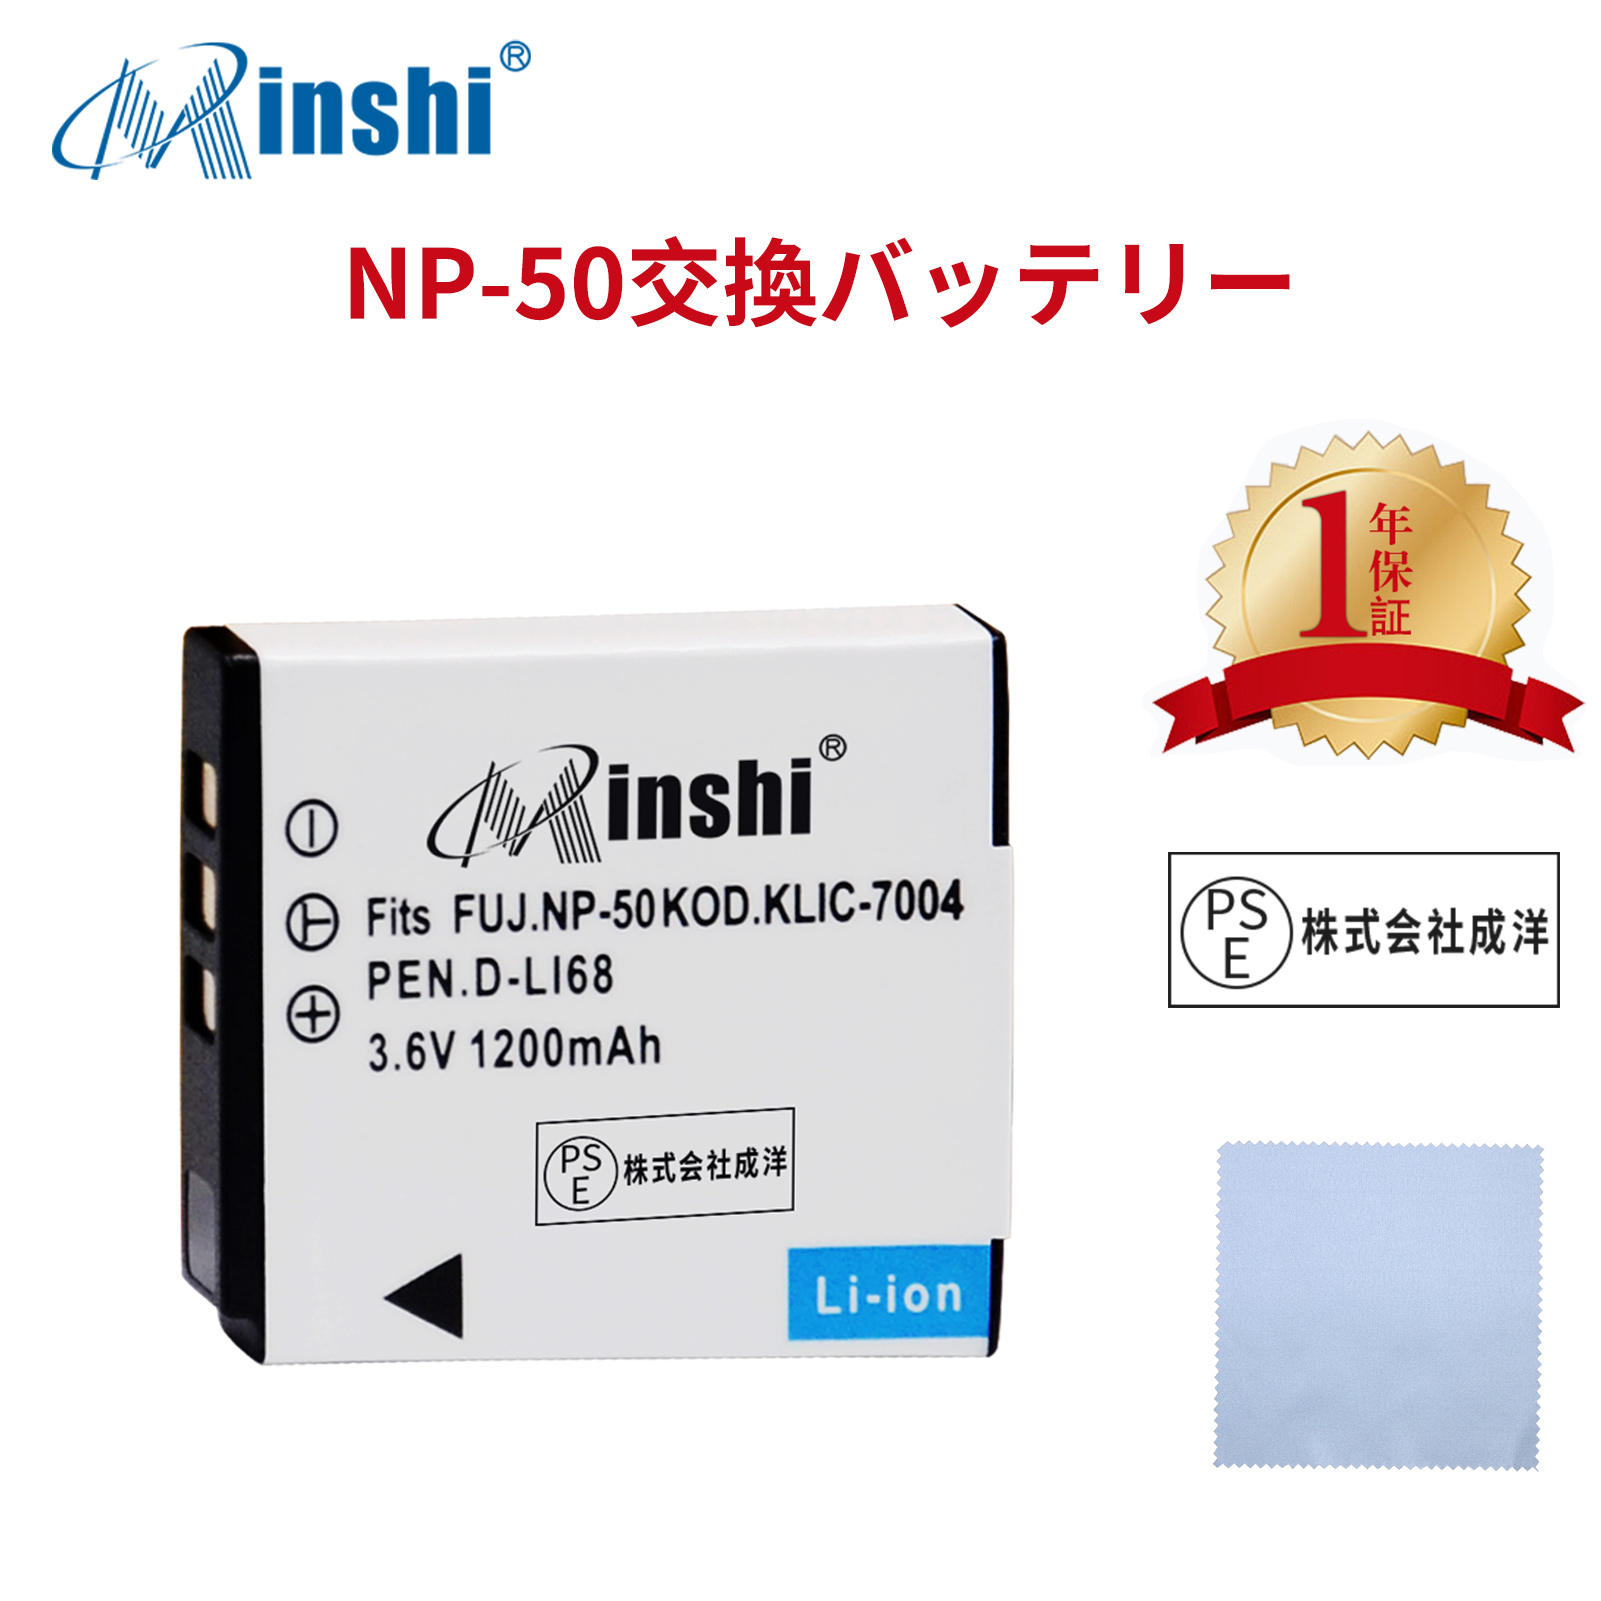 【クロス付き】 minshi FUJIFILM FinePix F820EXR 対応 NP-50  1200mAh  高品質 NP-50、NP-50A互換バッテリー